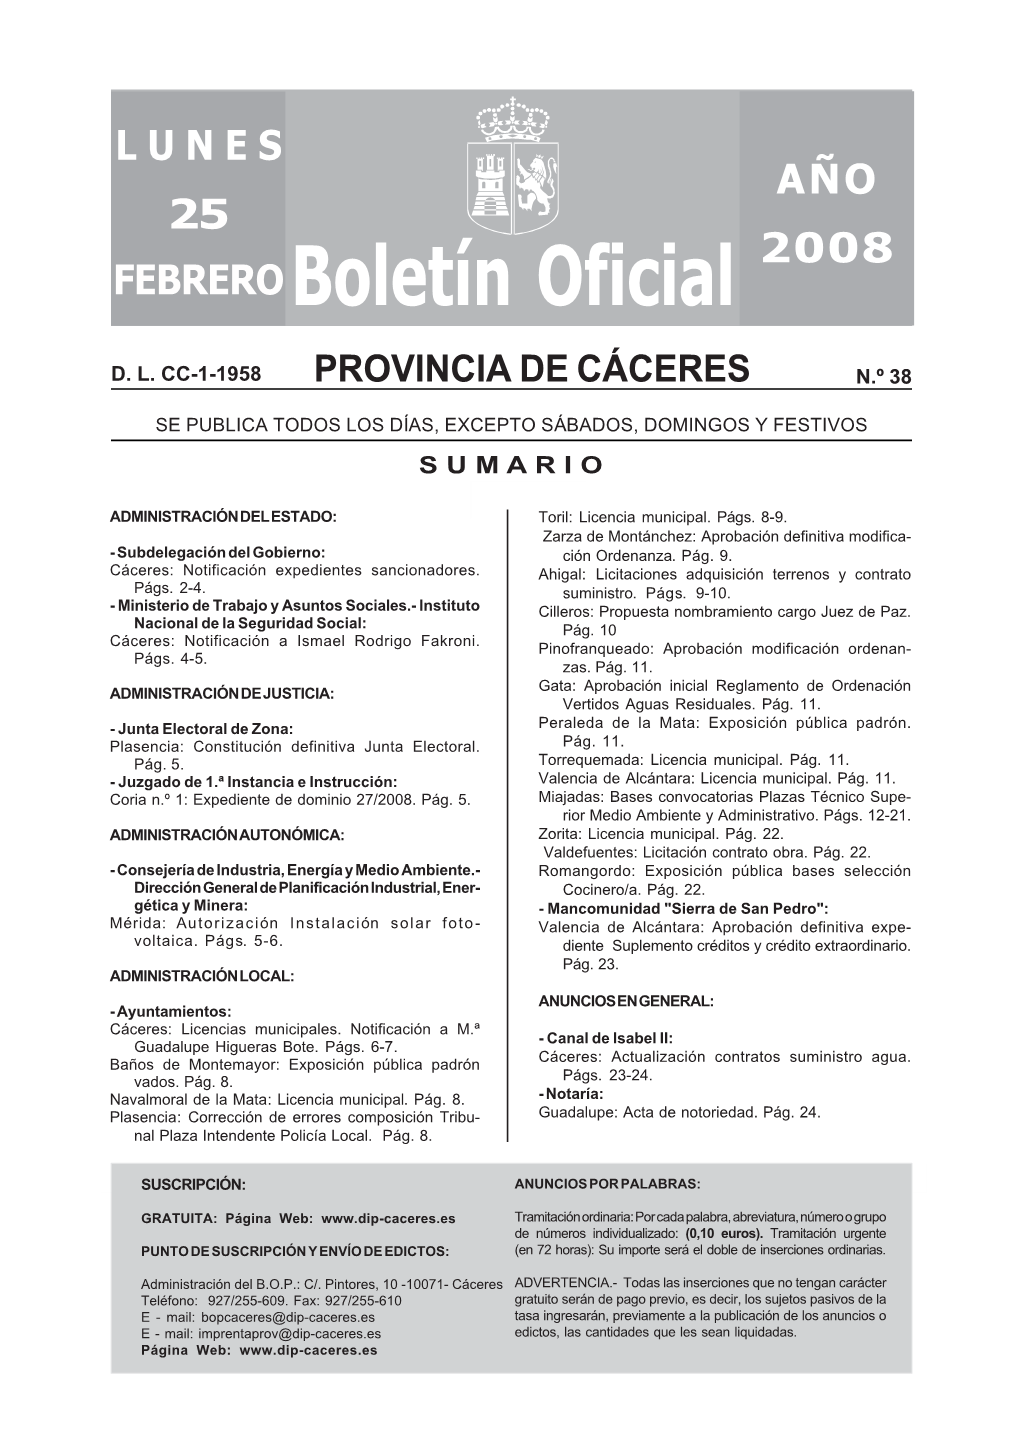 Boletín Oficial De La Provincia De Cáceres De 3 De Enero De 2008, Nº 2 ), Quedando Las Edicto Bases 4.1 Y 5.5 Redactadas De La Siguiente Manera